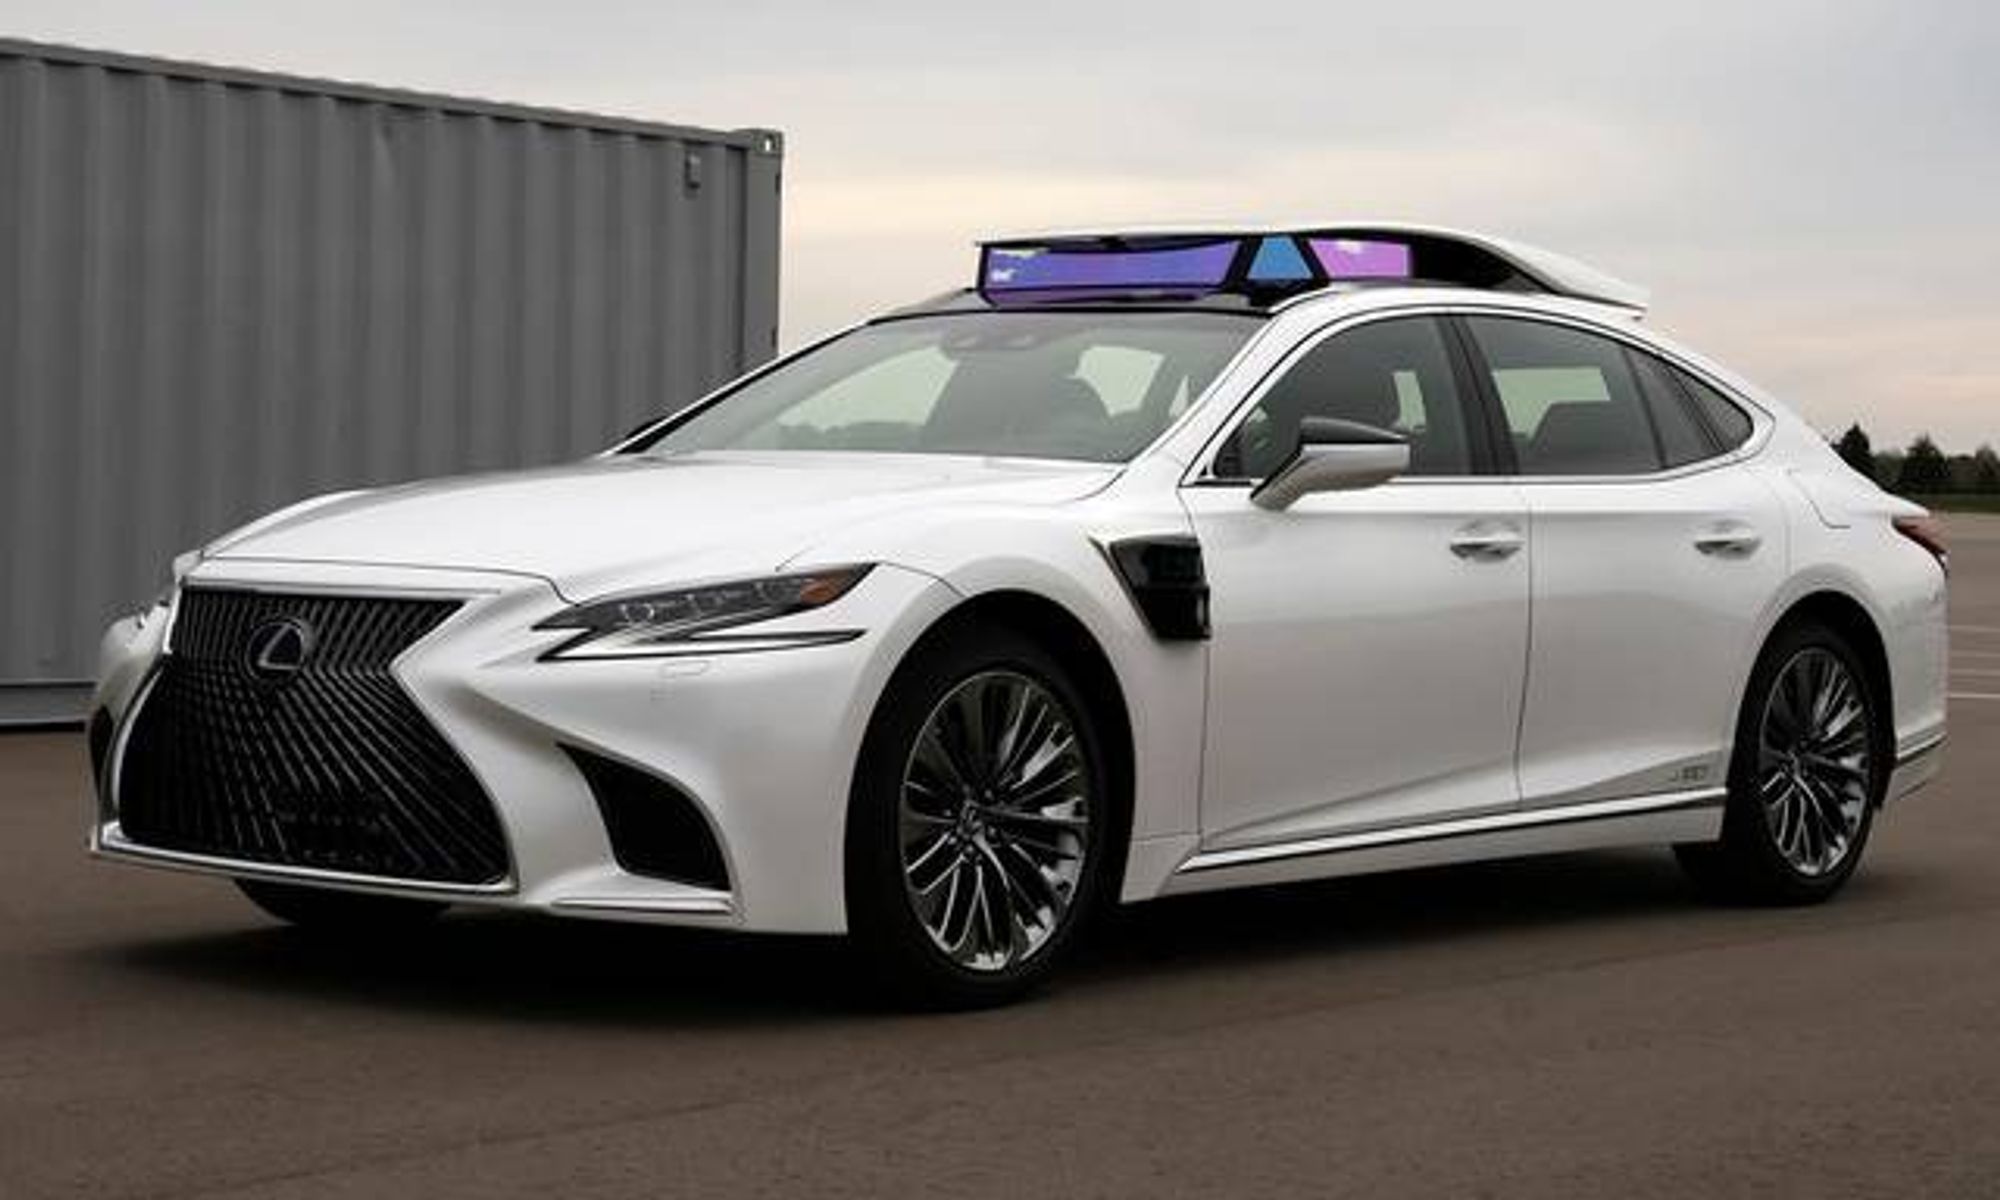 De nyeste selvkjørende Lexus-bilene har en autonomi på nivå 4. Neste år kommer Toyota til å slippe dem løs i trafikken i Tokyo.